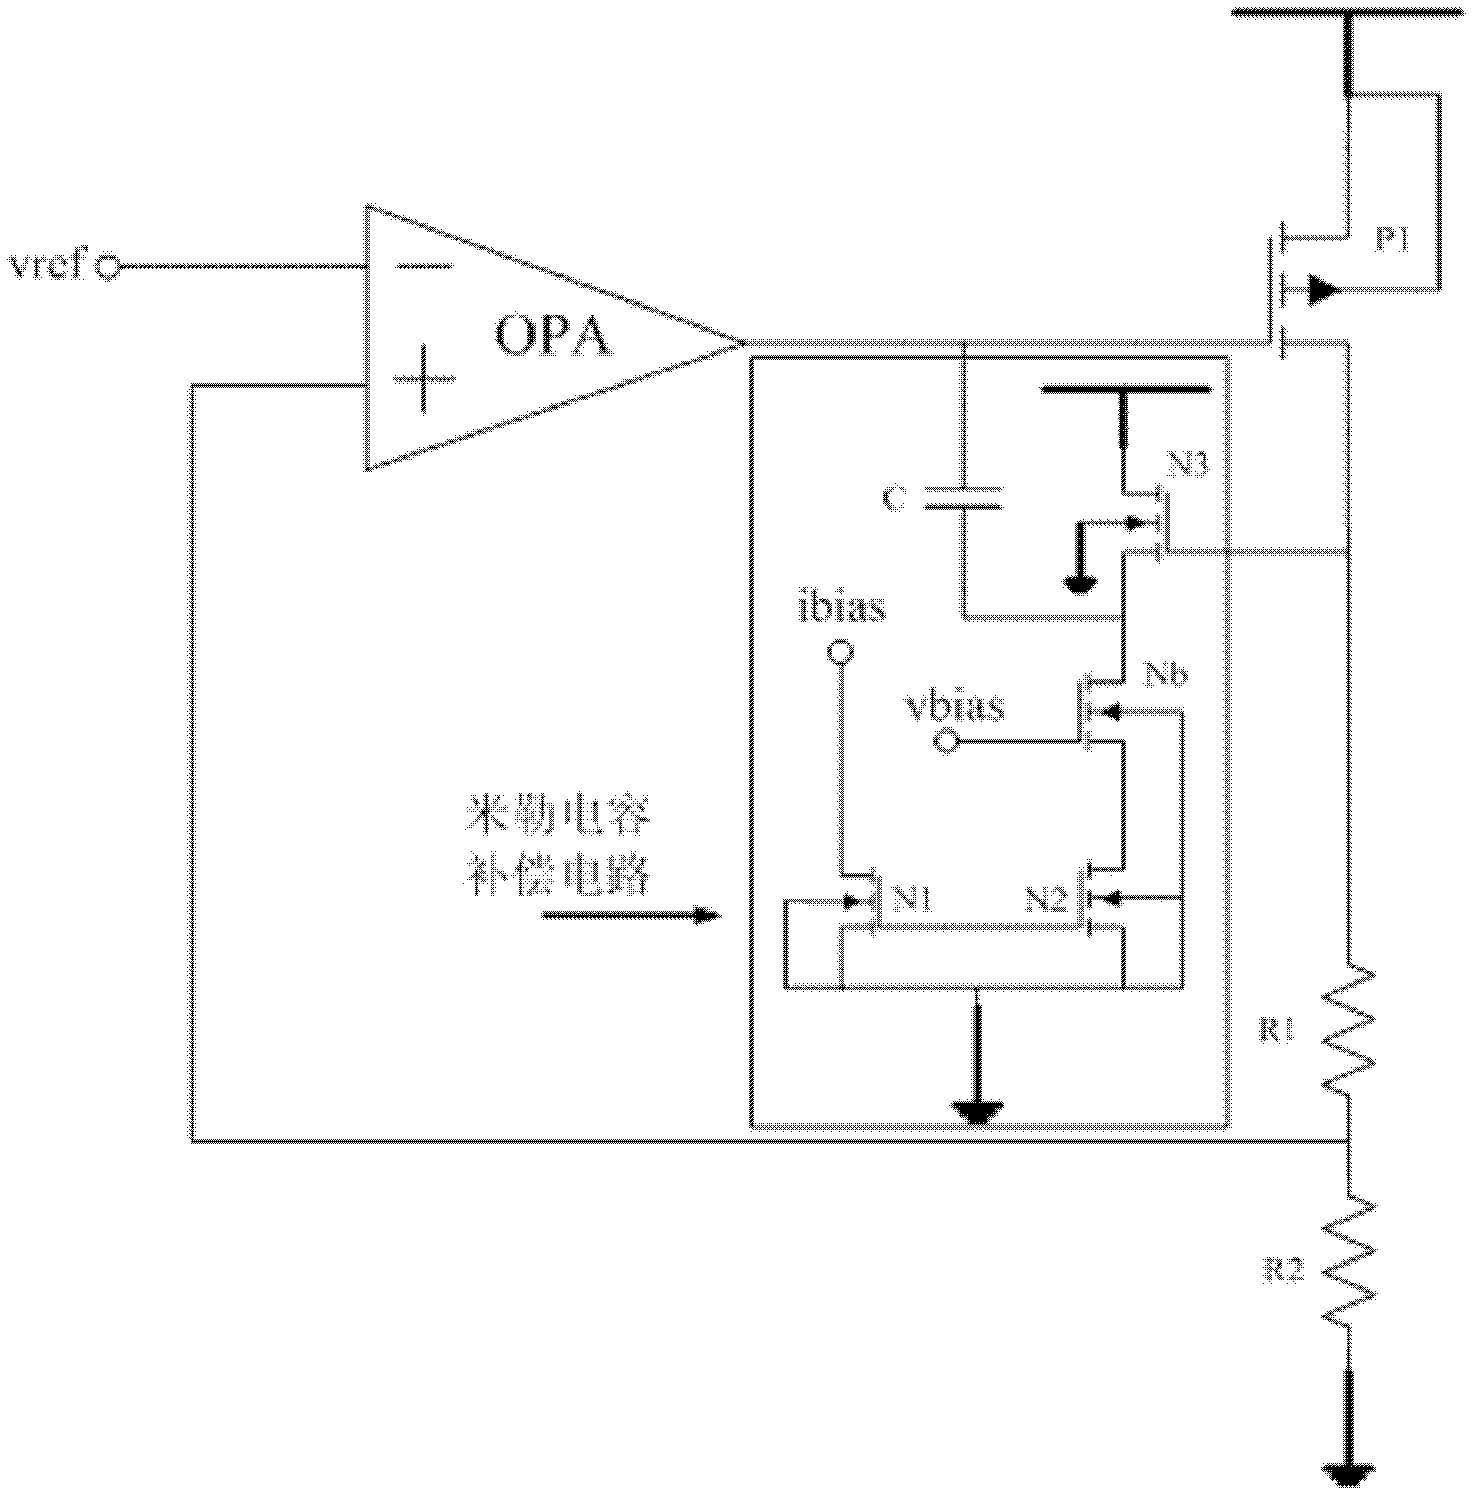 Loop circuit compensating circuit